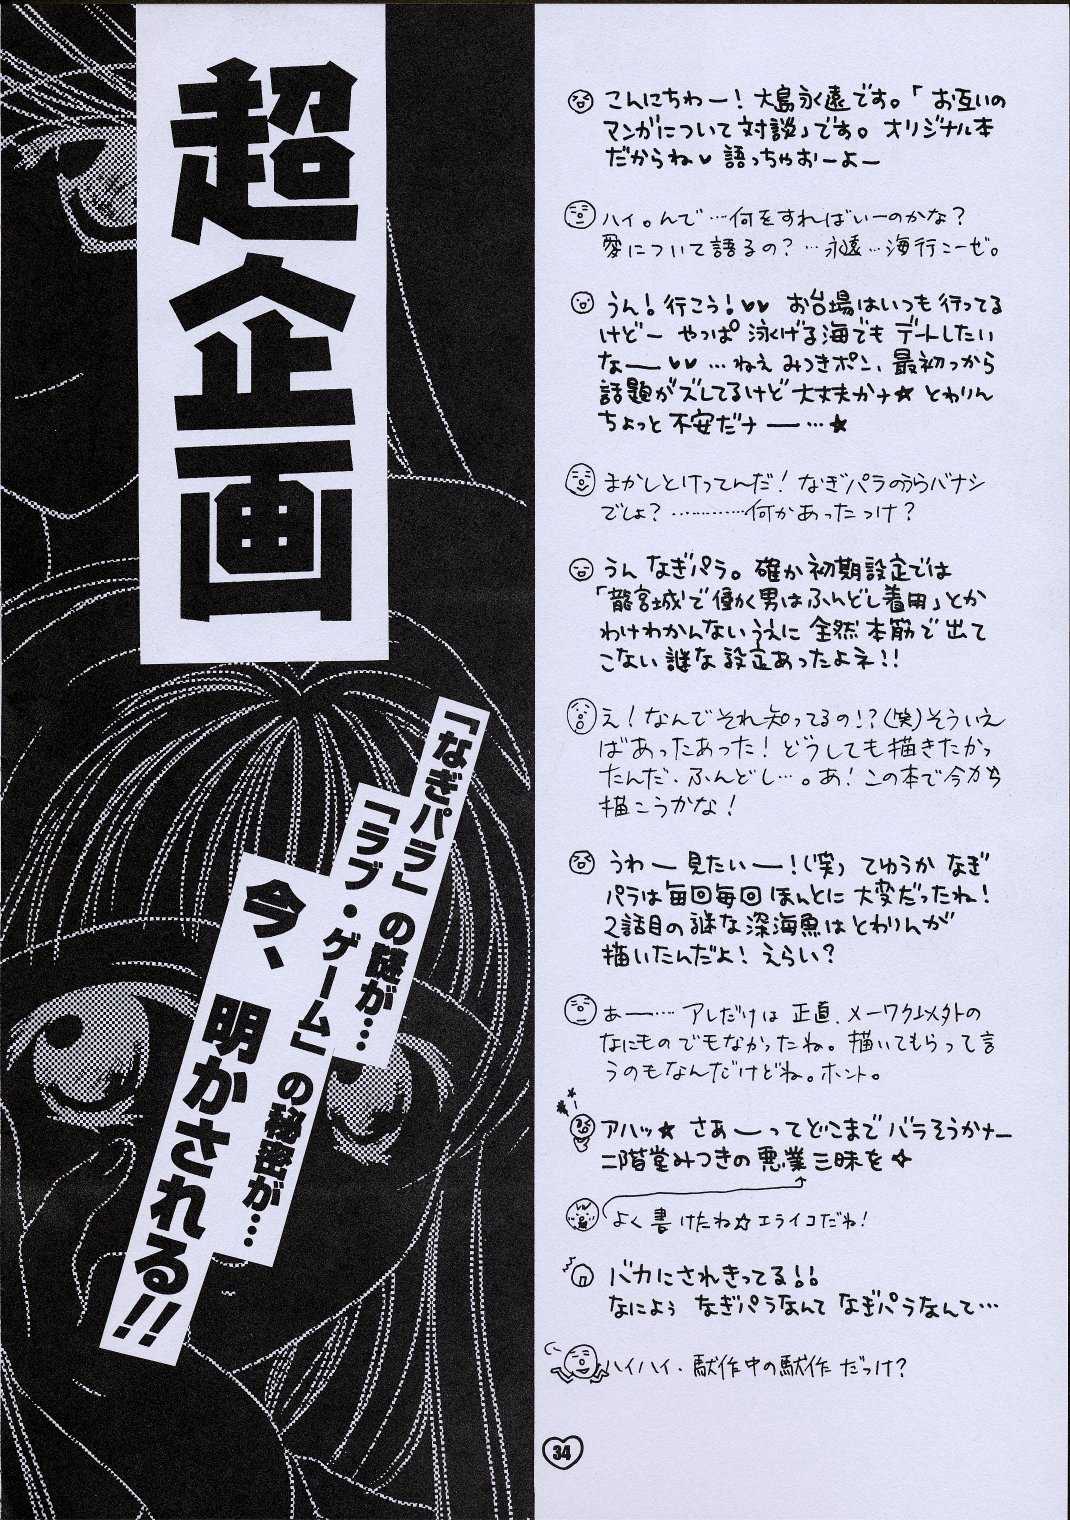 (C61) [ZOKU (Mitsuki Nikaidou &amp; Towa Oshima)] ZOKU hikiya (C61) [ZOKU (二階堂みつき、大島永遠)] ZOKUヒキヤ